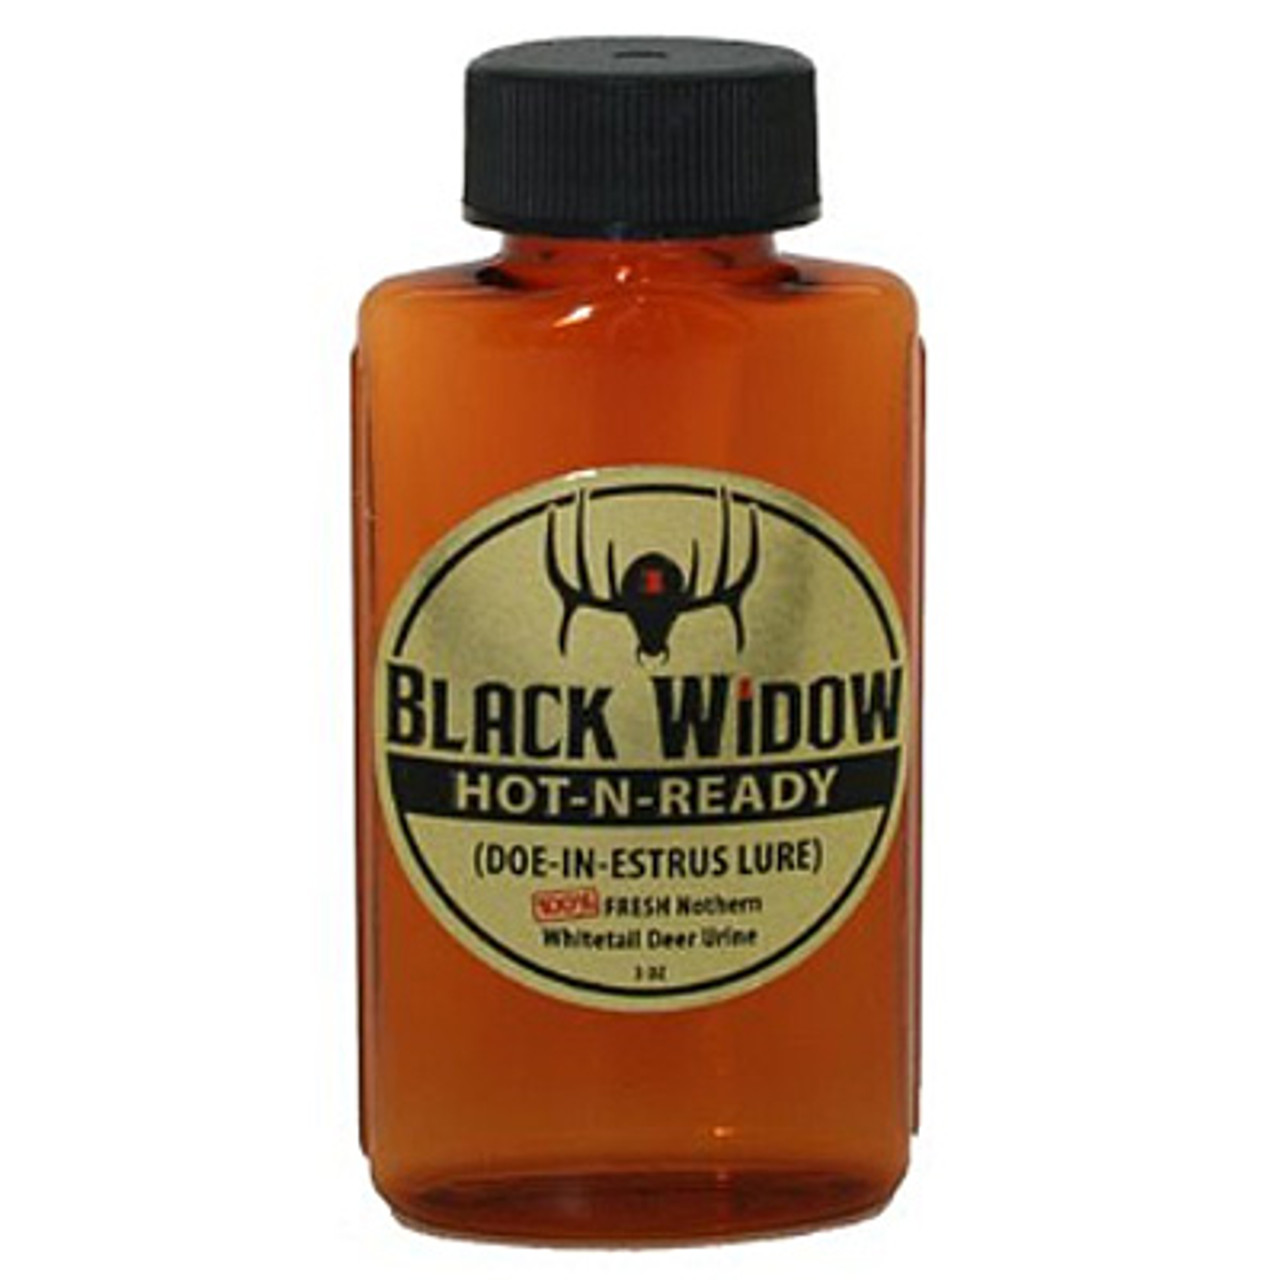 Hot-N-Ready Doe Estrus 1.25 oz by Black Widow